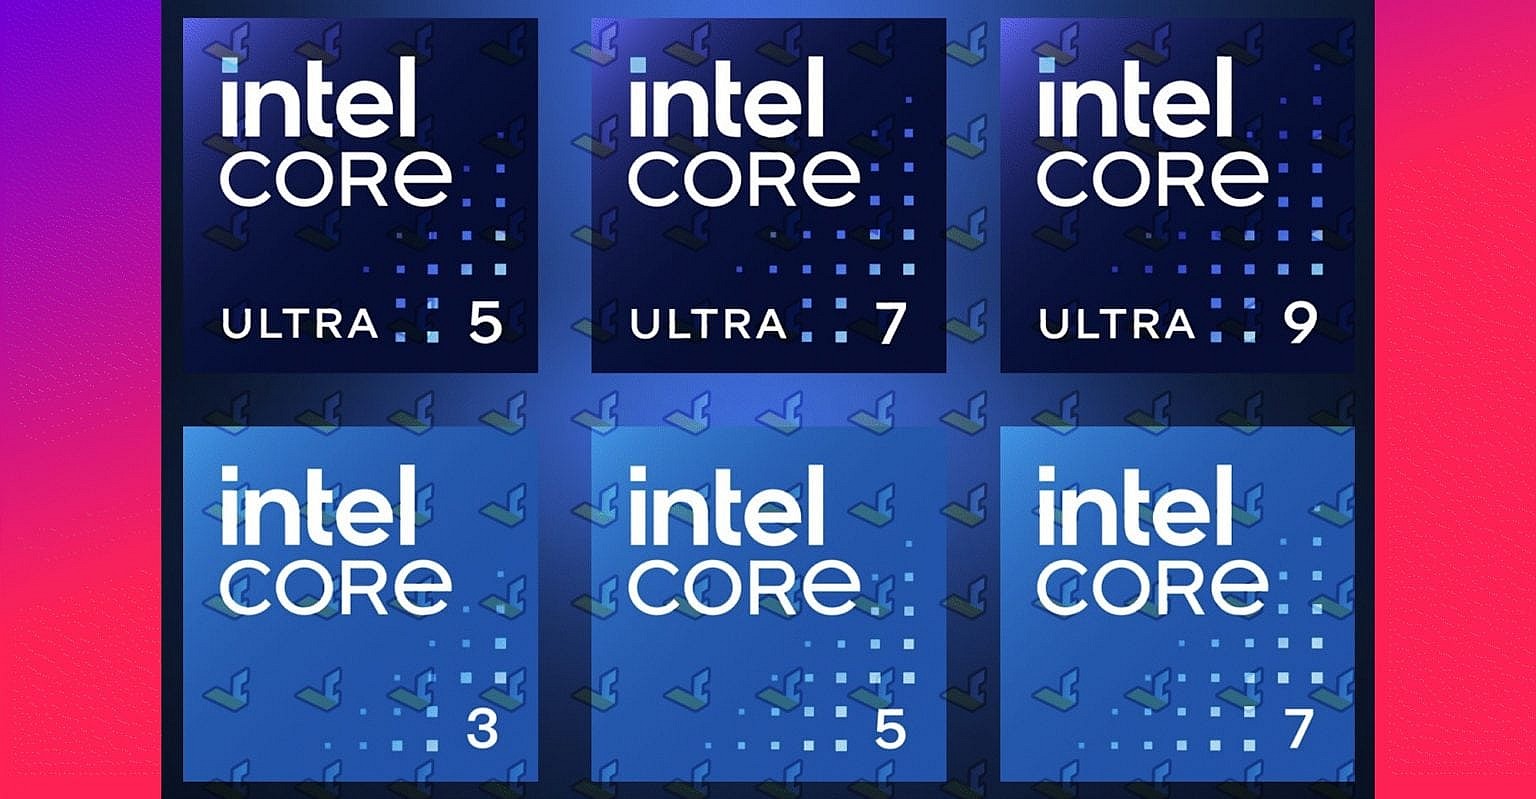 Intel, I Harfini Artık Kullanmayacak, Yaklaşan Meteor Lake Işlemcileri Için Yeni Marka 5,7,9